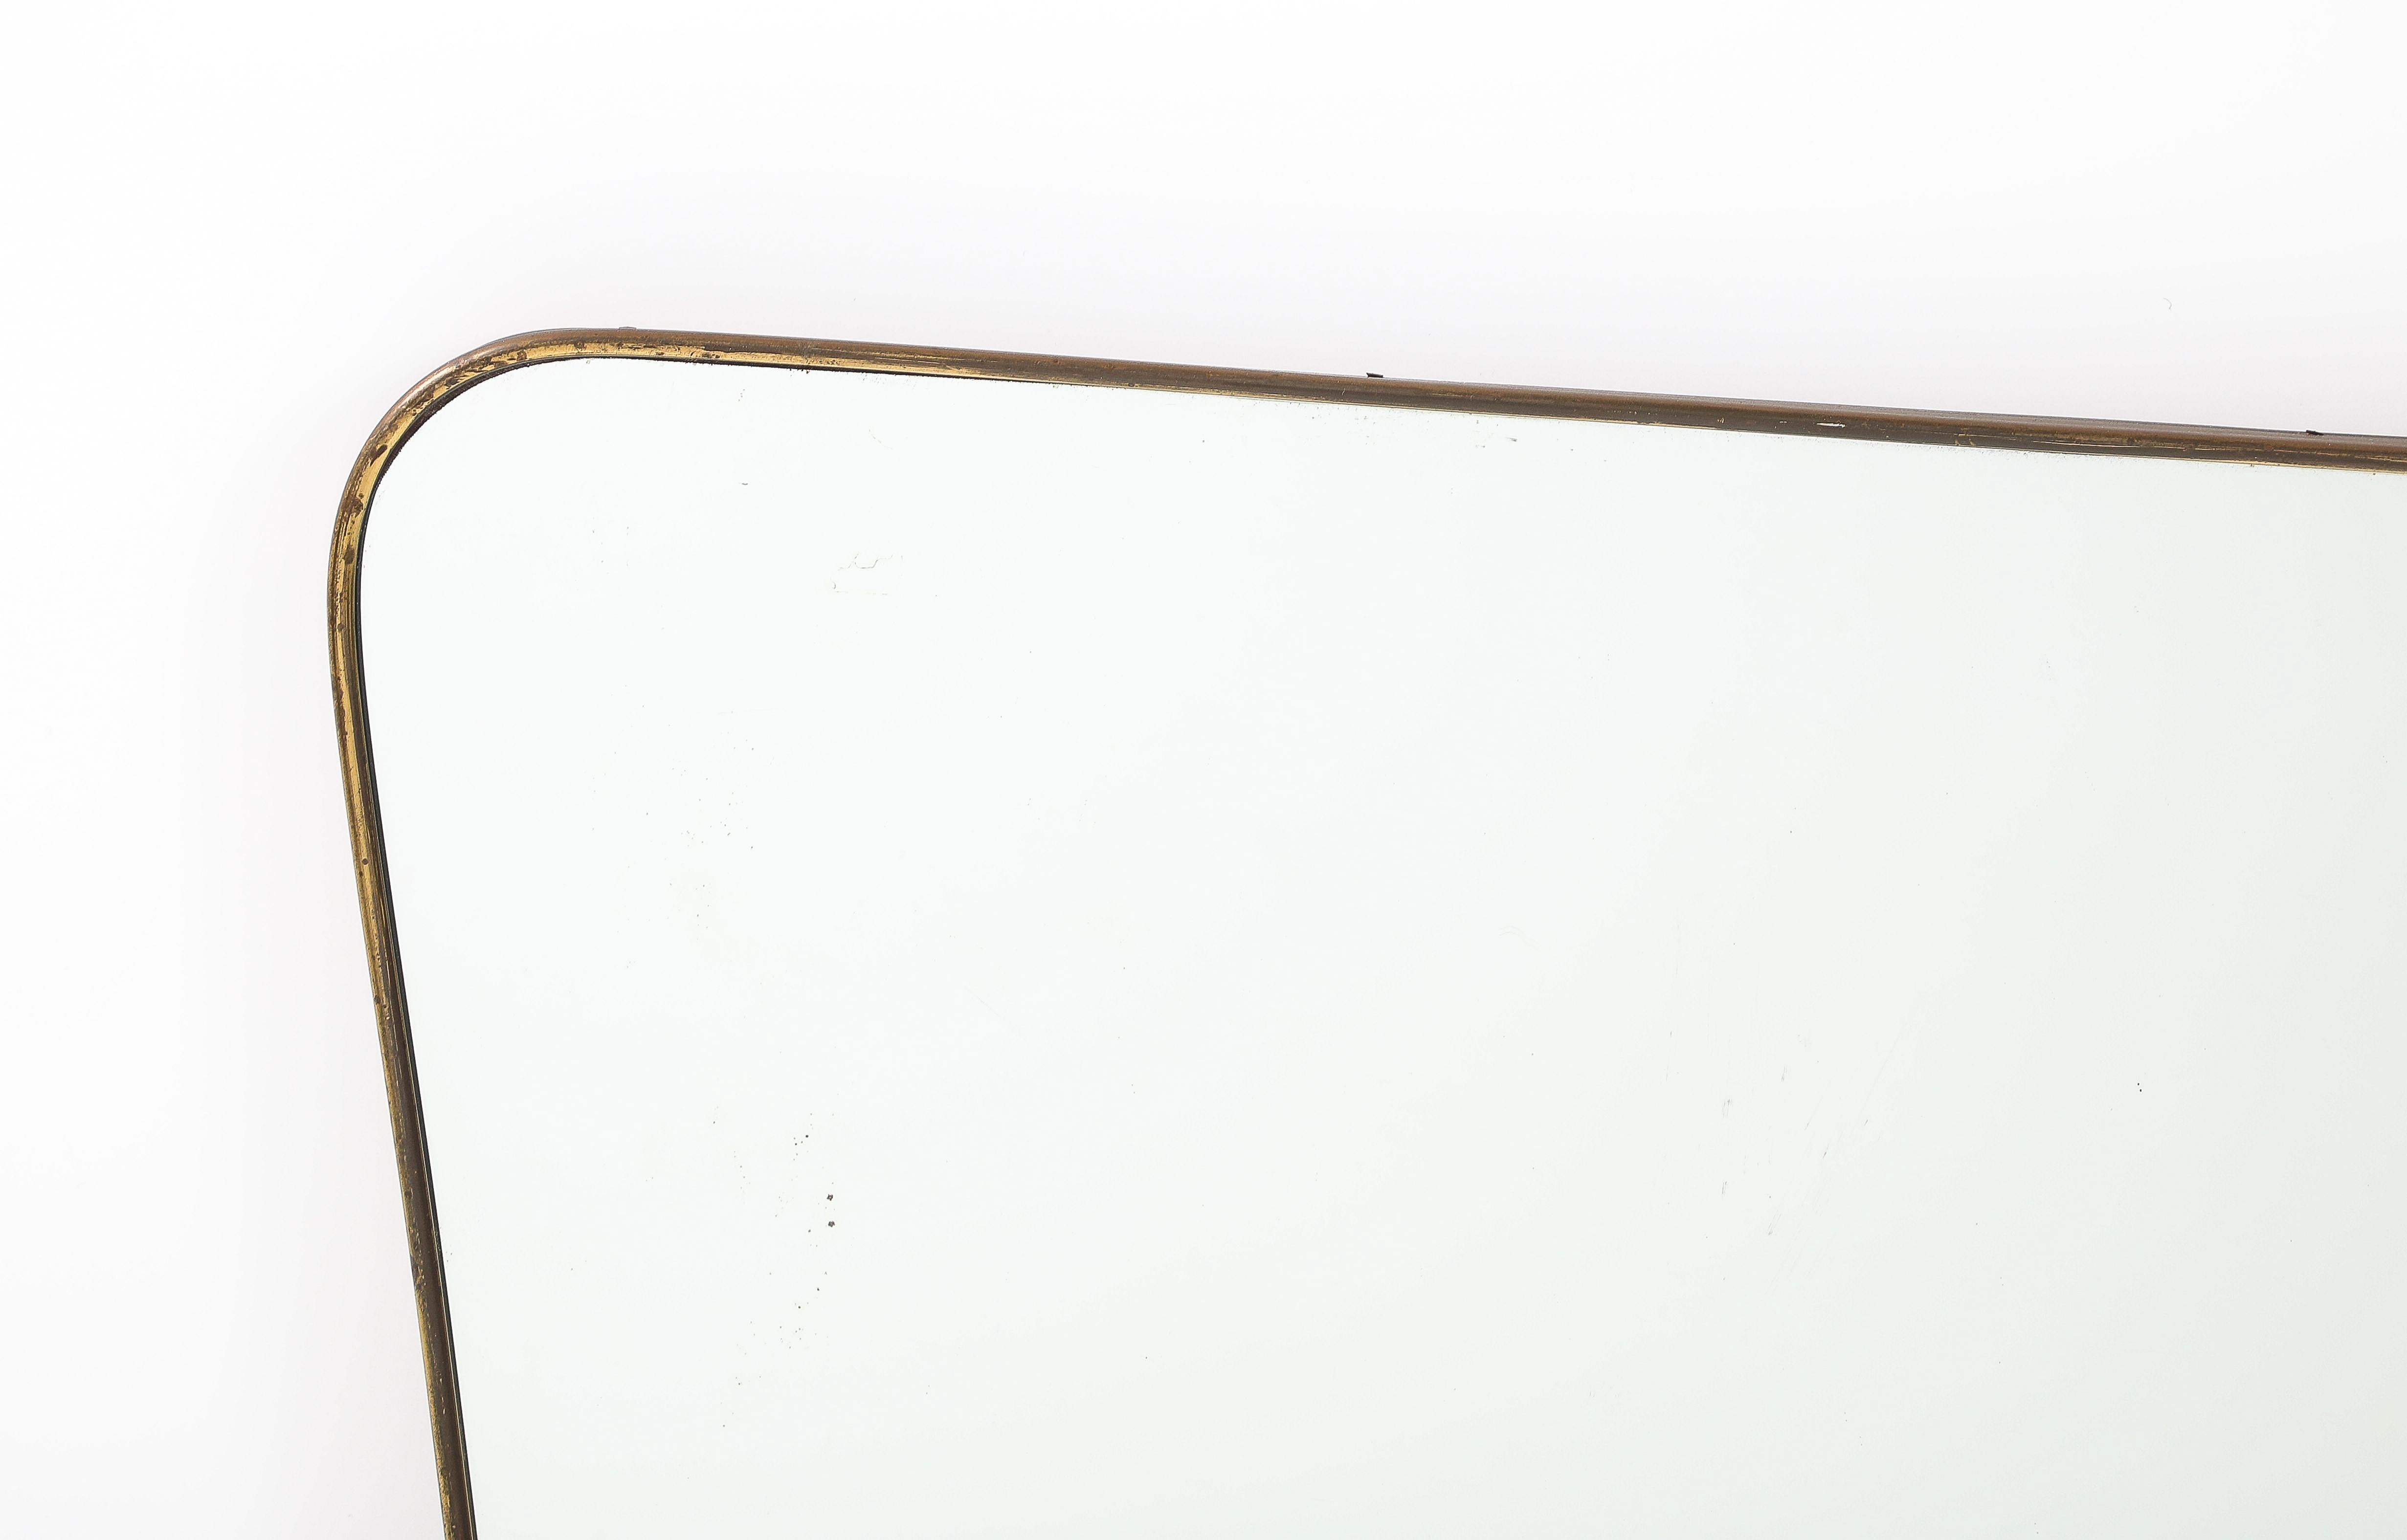 Horizontaler Messingspiegel der italienischen Moderne der 1950er Jahre im Stil von Gio Ponti.  Dieser exquisite Spiegel hat einen sanft geschwungenen Messingrahmen mit abgerundeten Ecken und sich sanft verjüngenden Seiten. Oben in der Mitte befindet